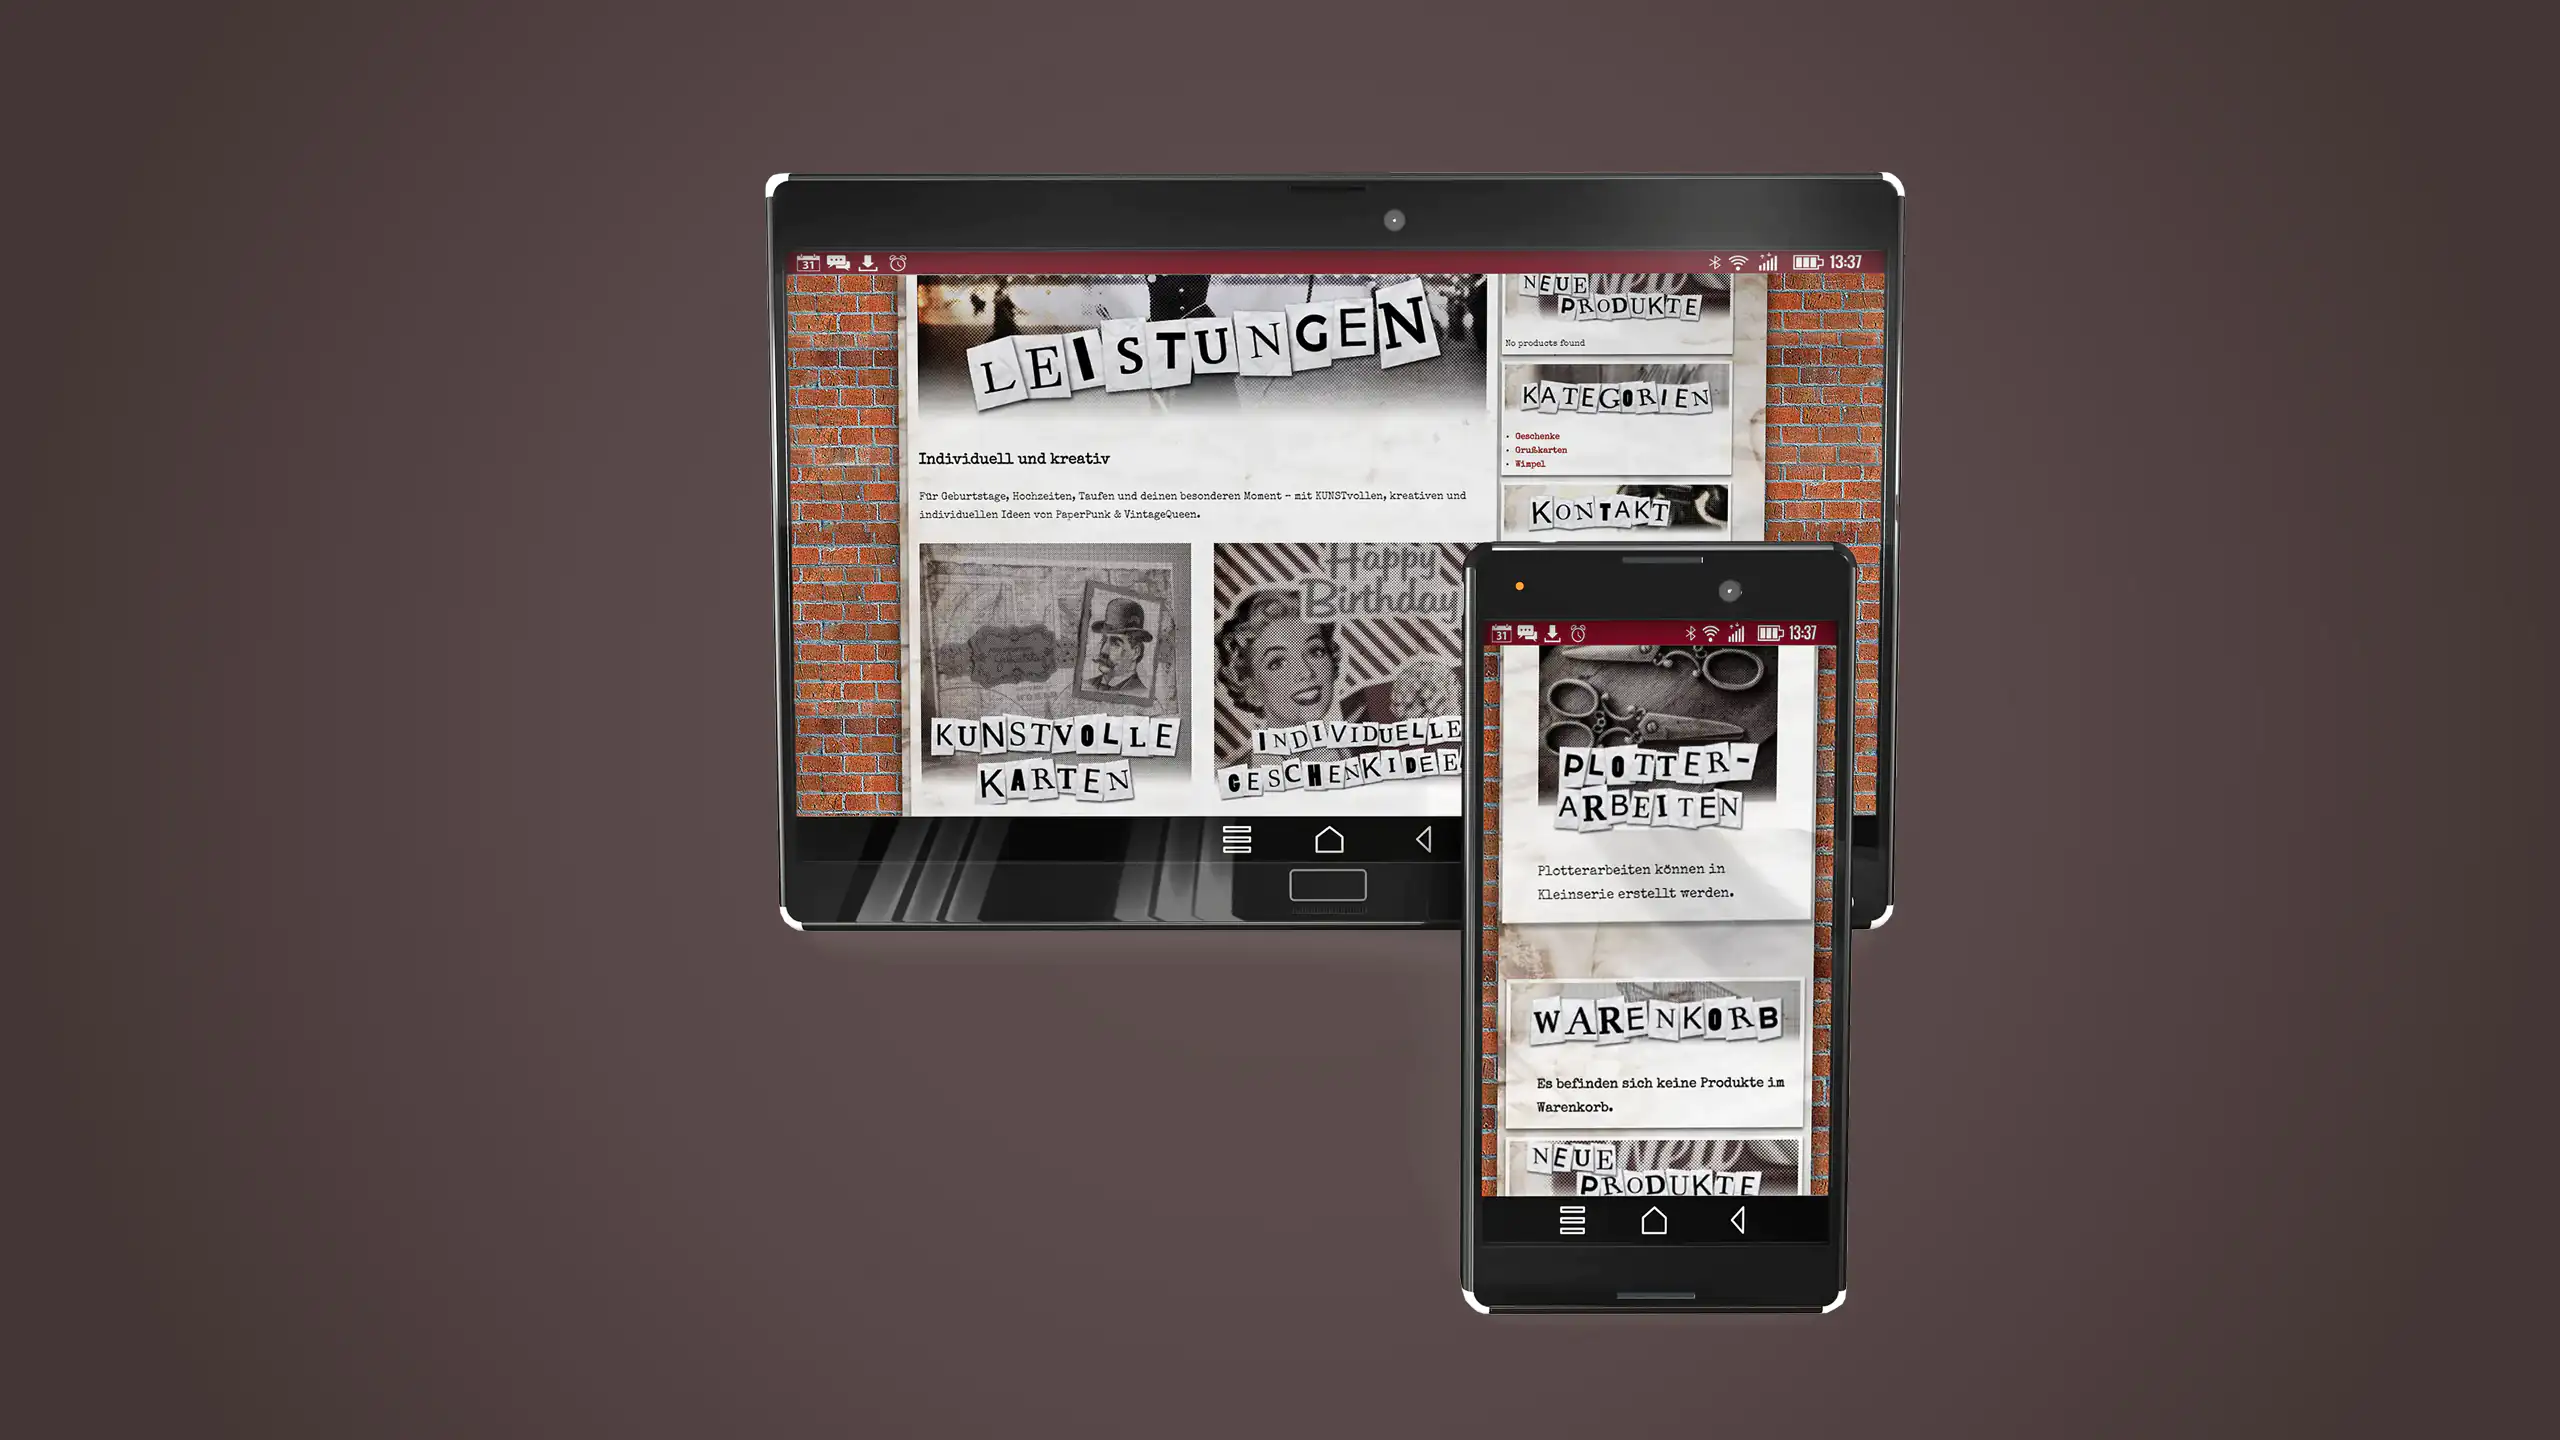 3D-Mockup eines Tablets sowie eines Smartphones, auf dem die Seite Paper Punk & Vintage Queen zu sehen ist, das Ganze ist au dunkelbraunem Hintergrund